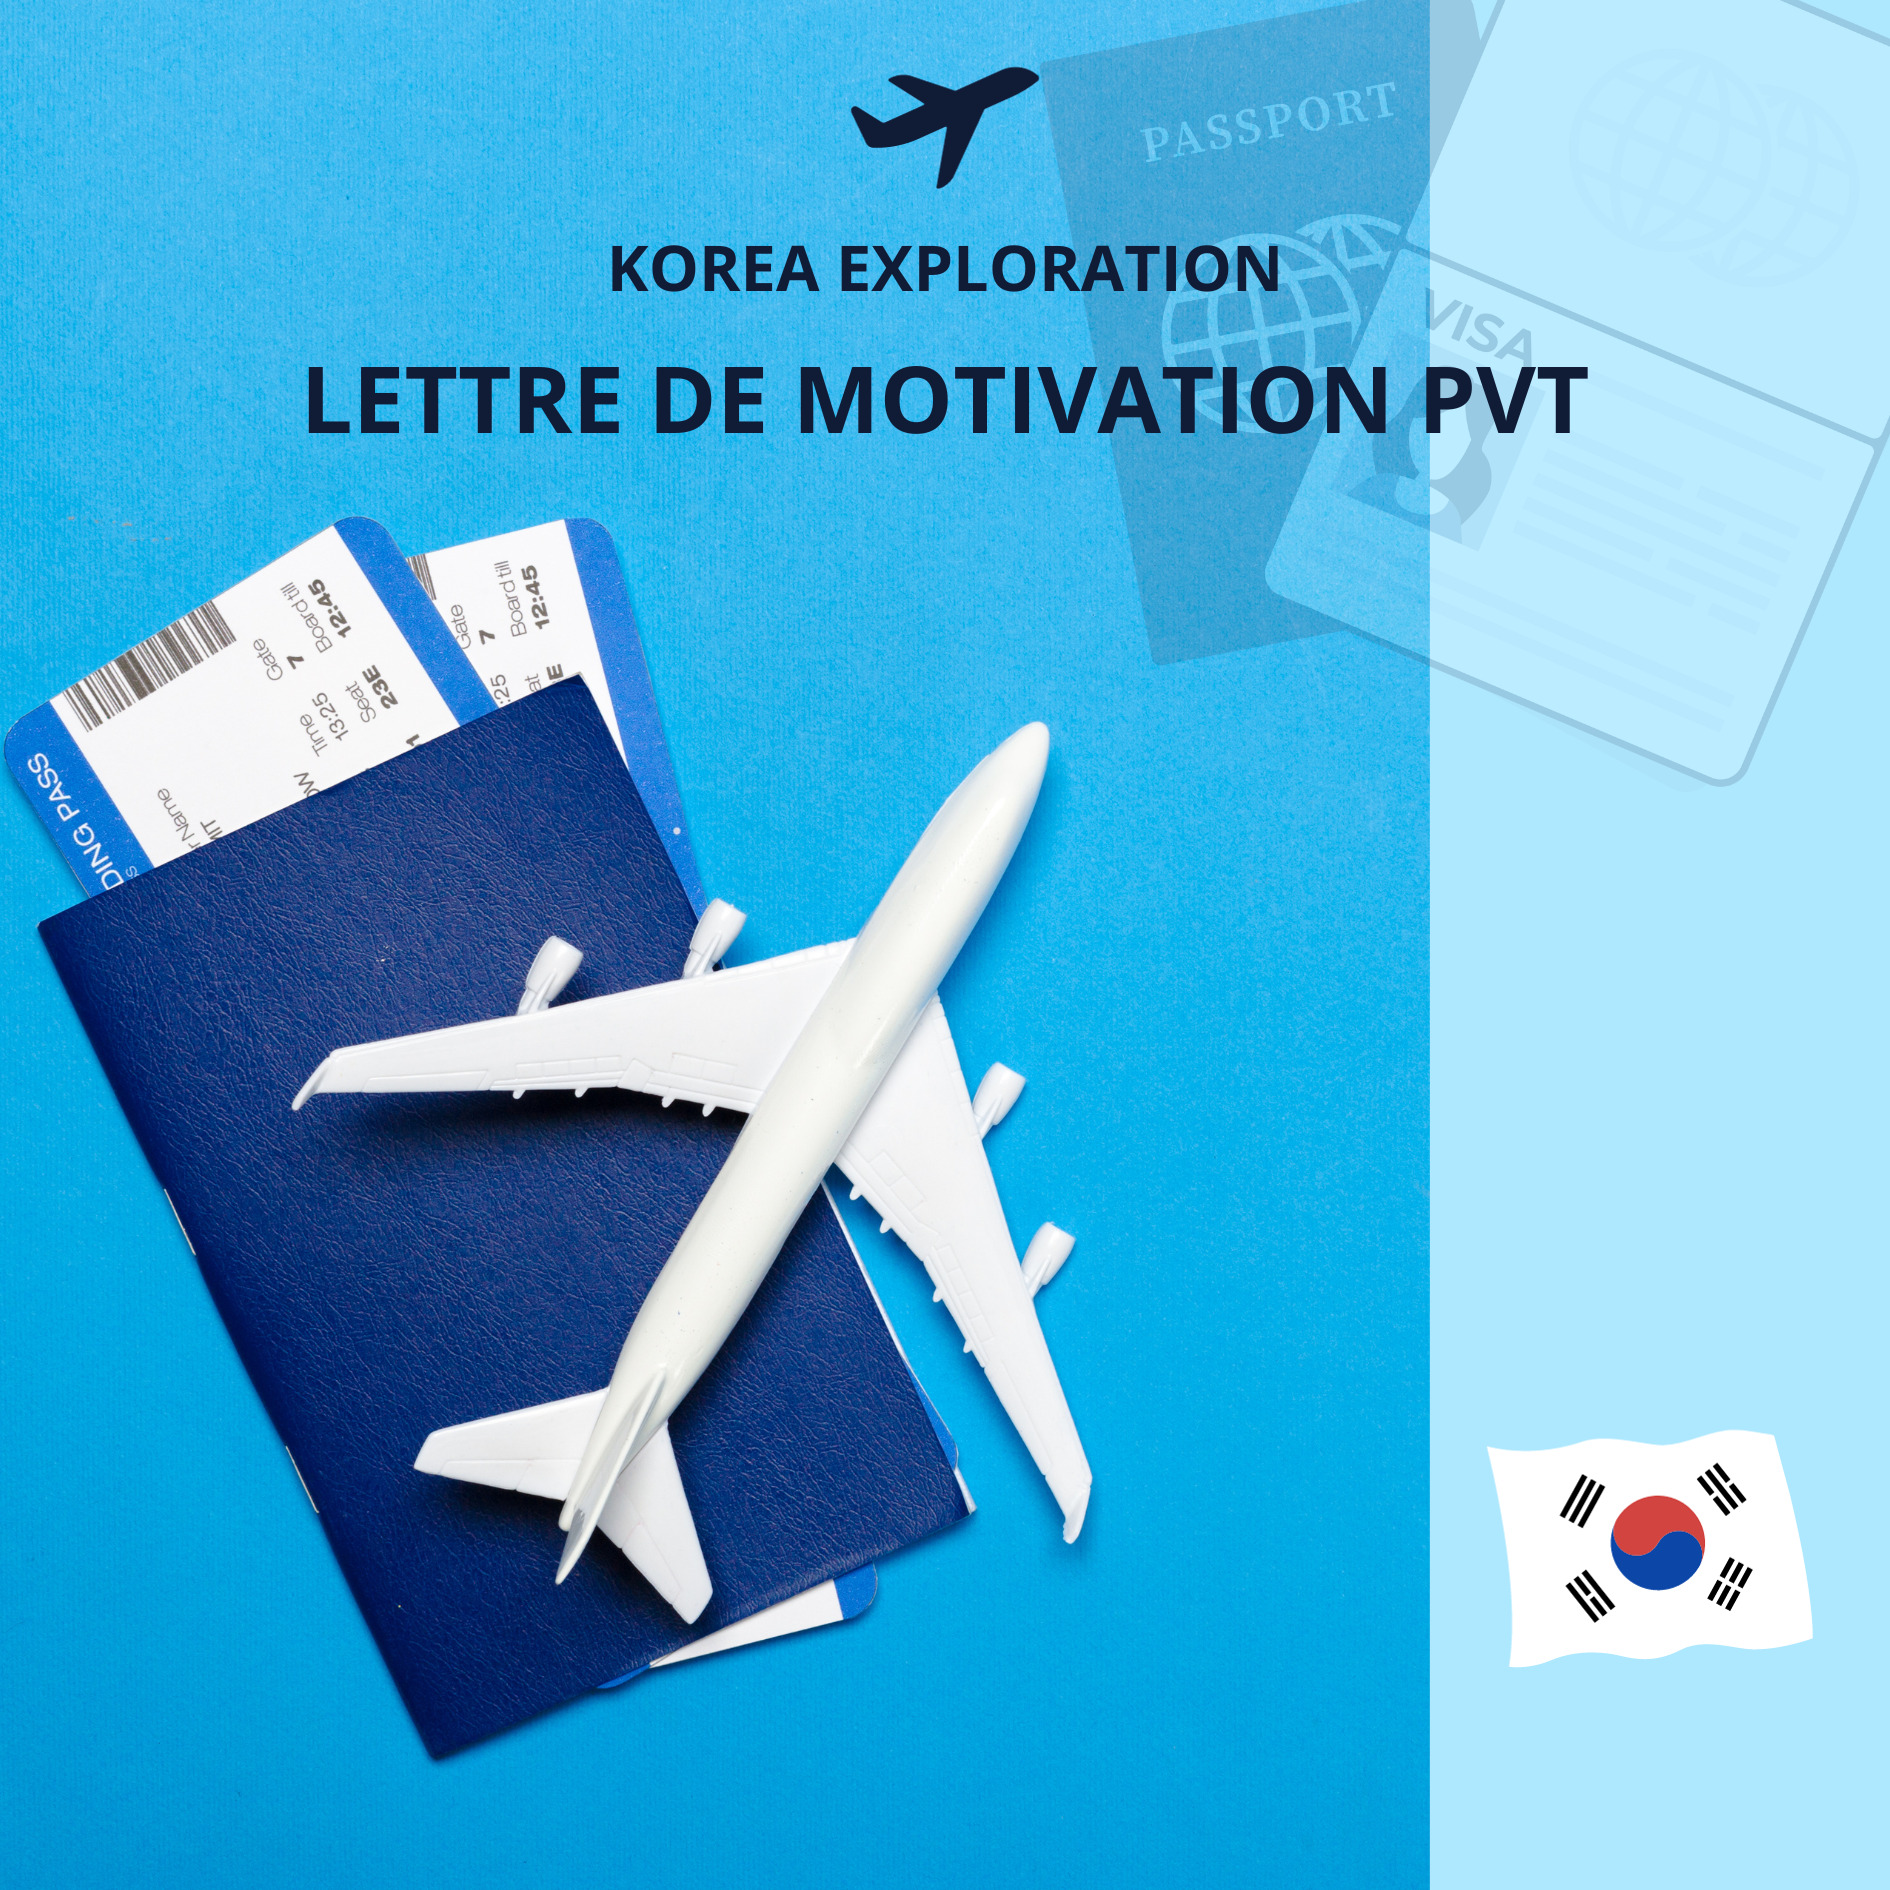 Lettre de motivation PVT en Corée du sud : Exemple et Guide